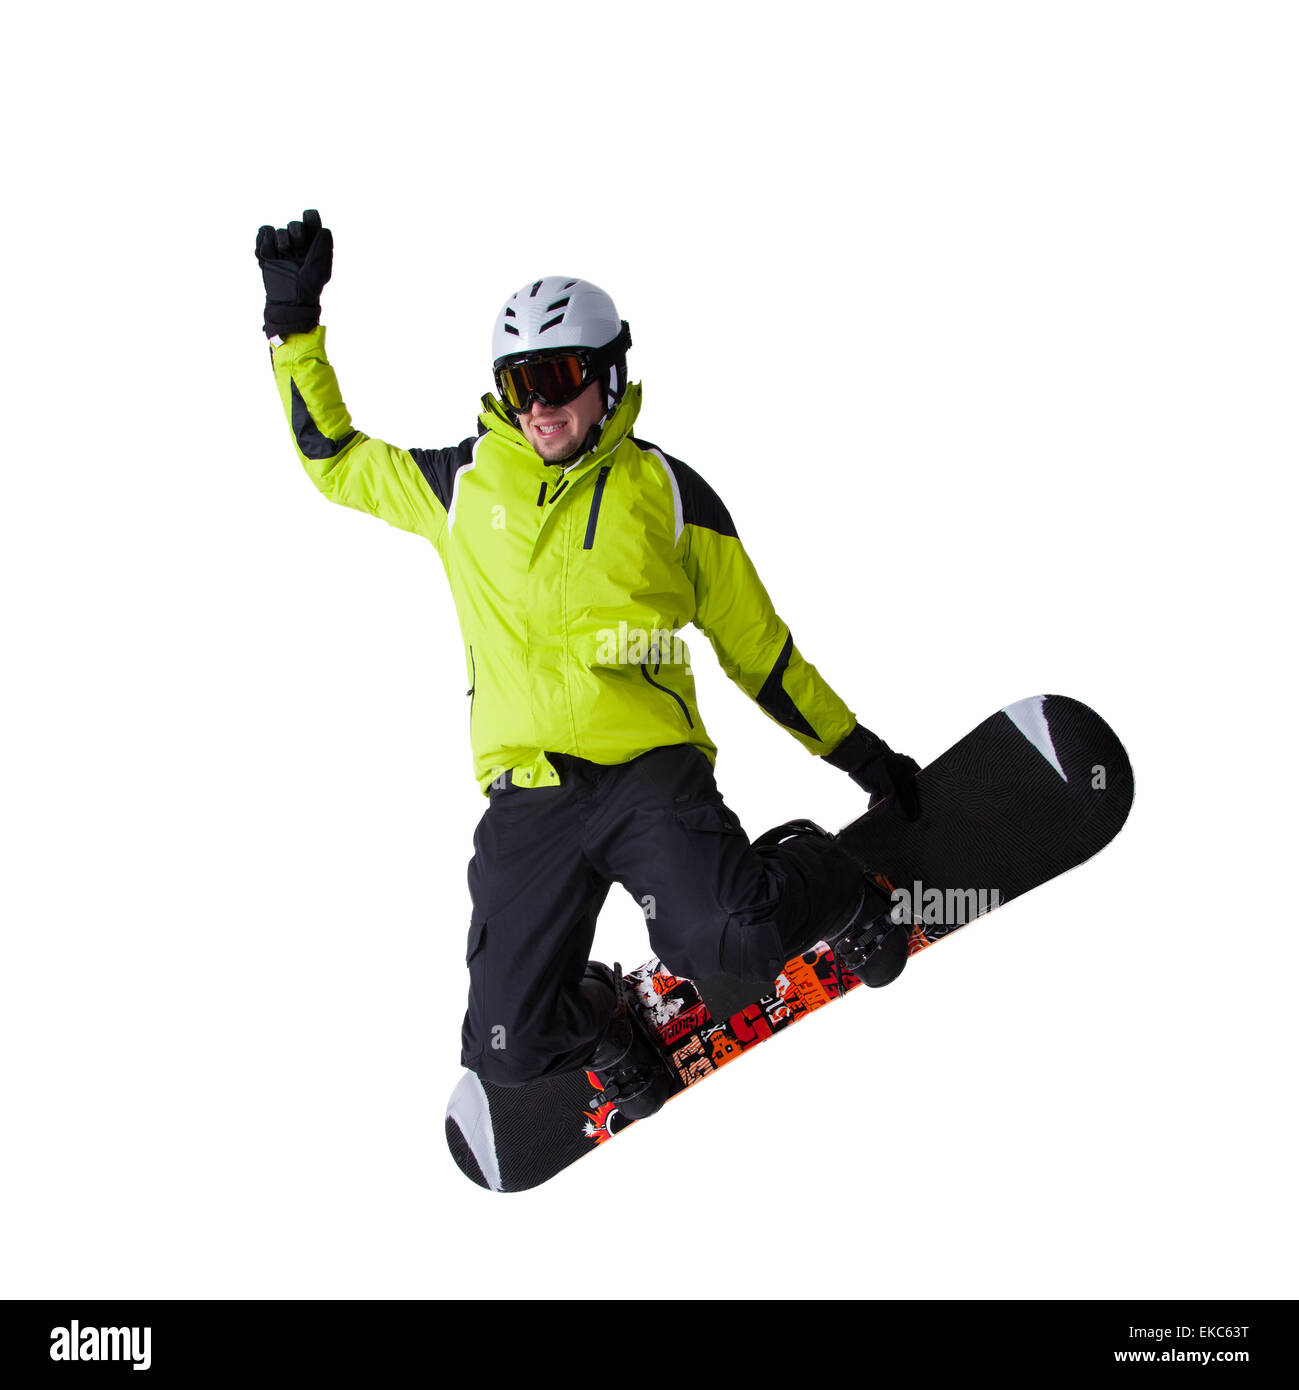 Snowboarder am Sprung auf weißem Hintergrund Stockfoto